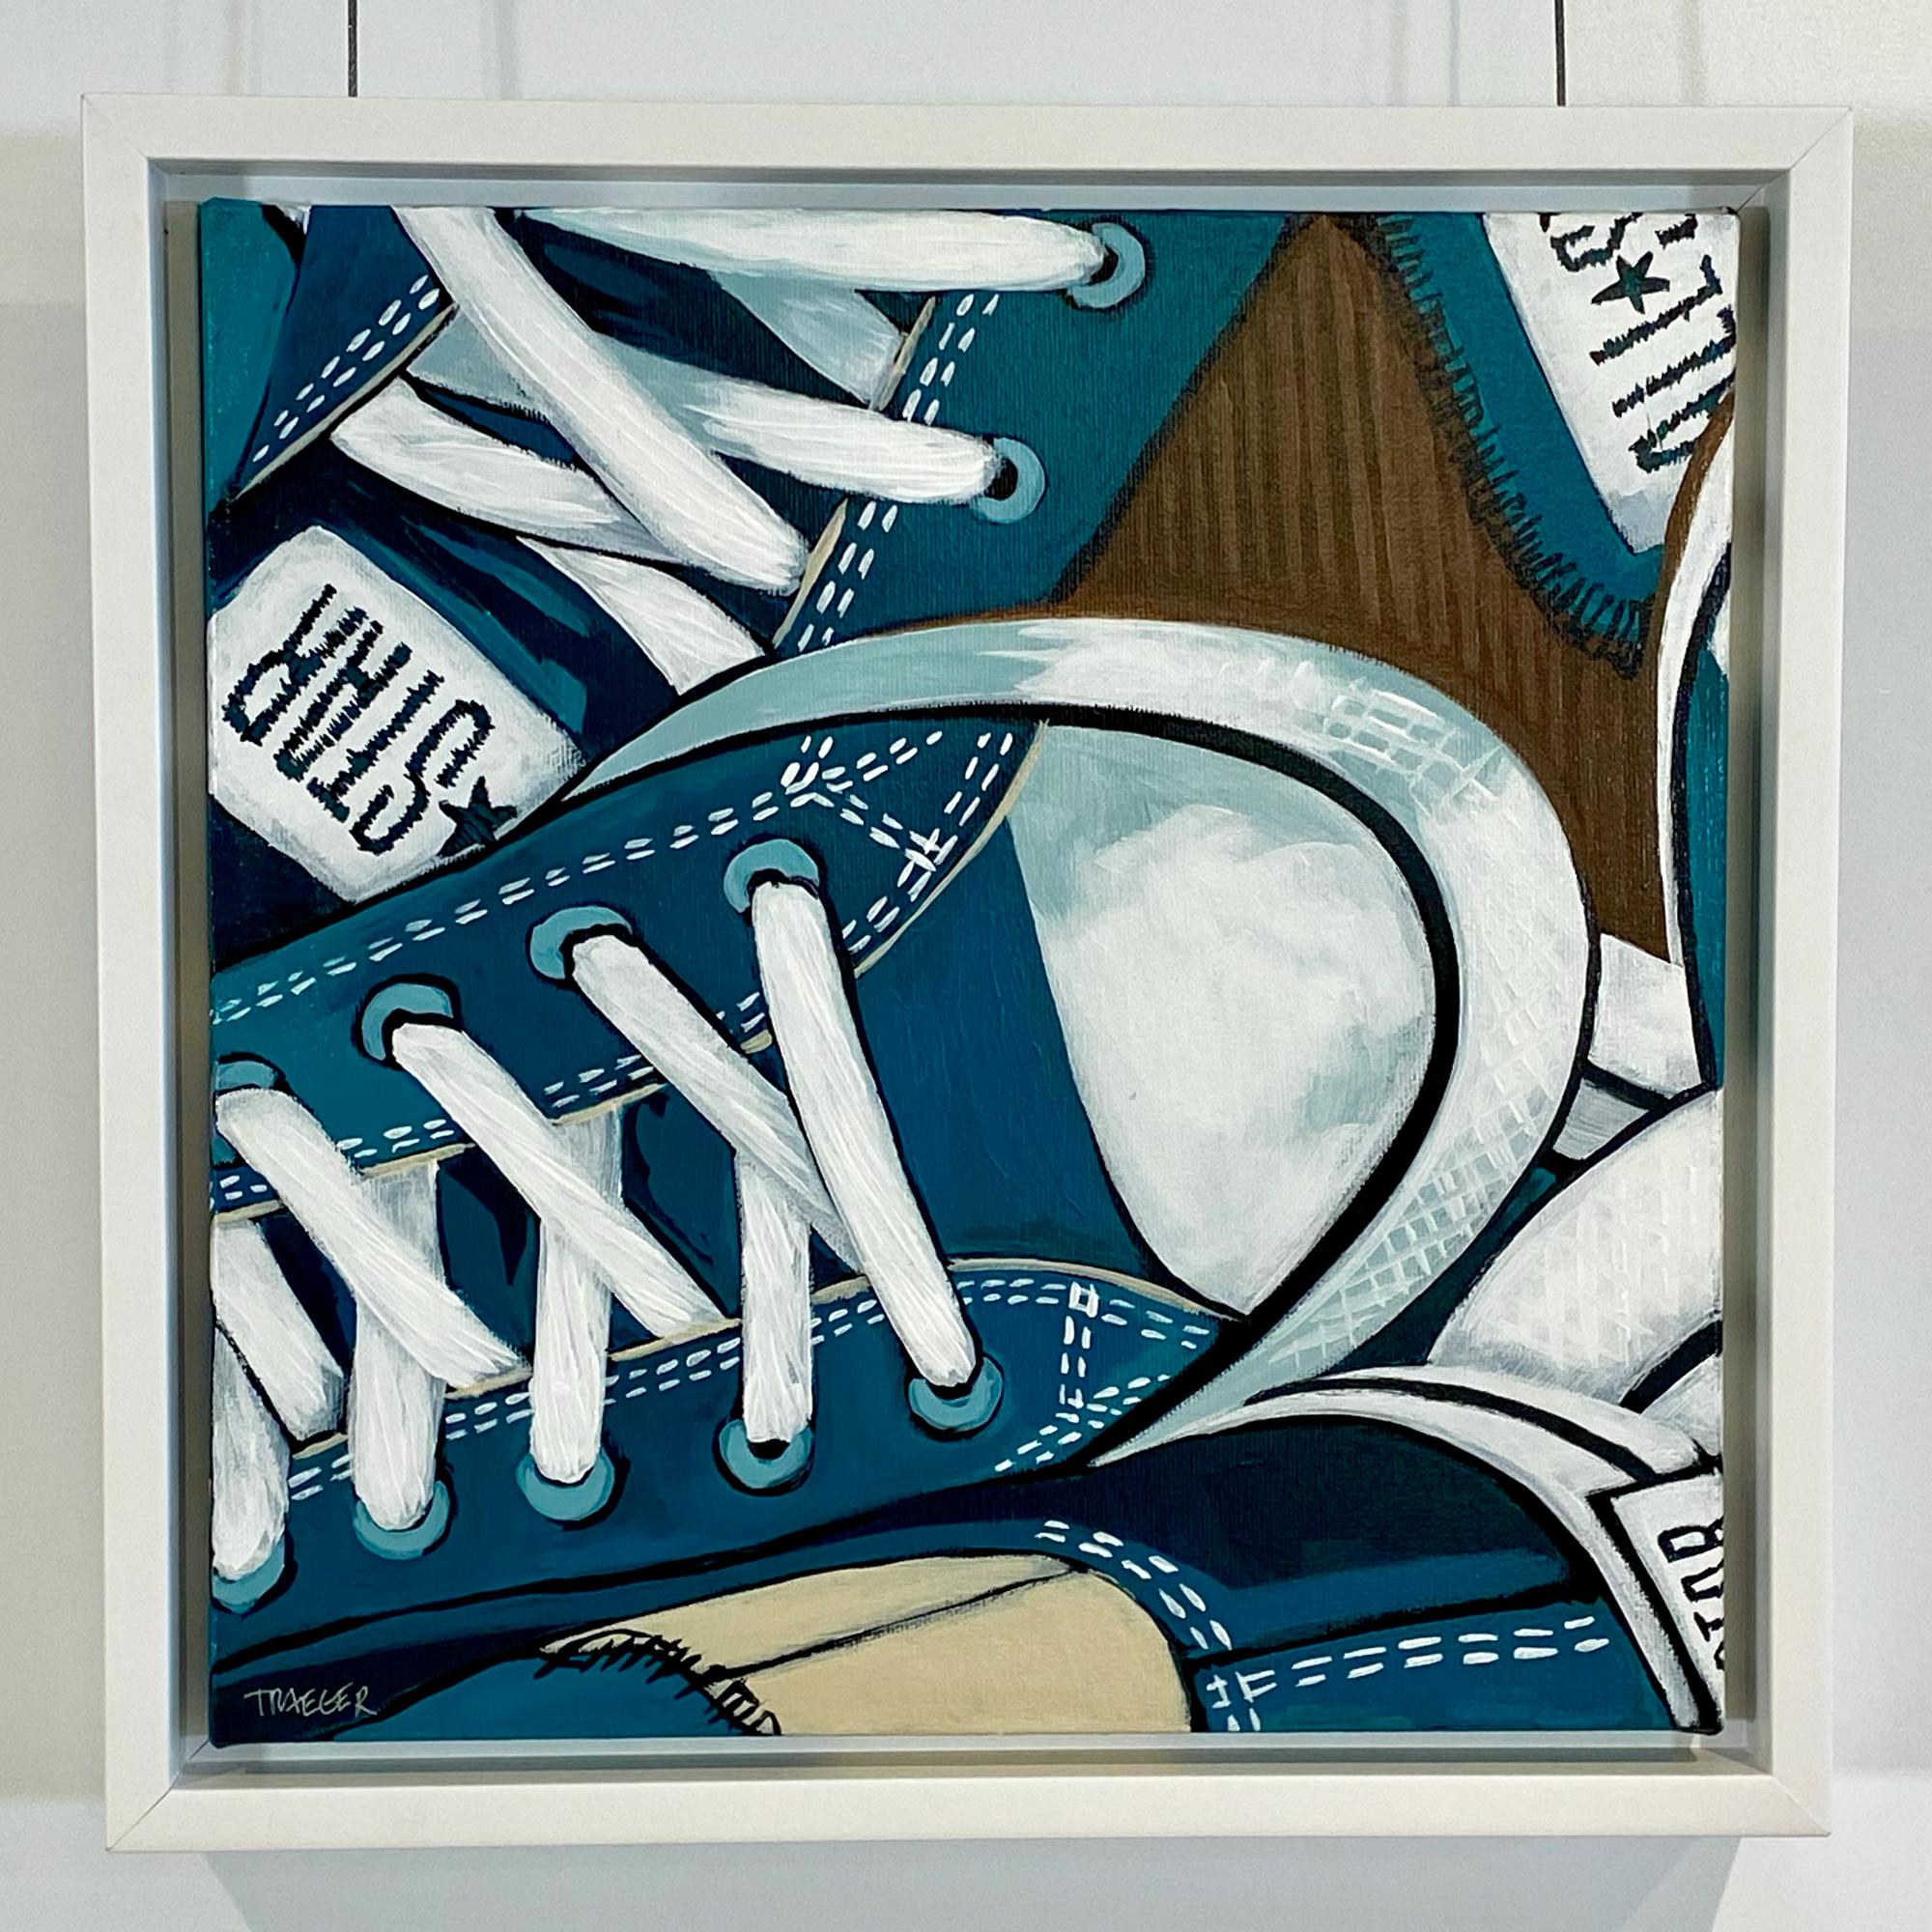 Kathy Traeger Figurative Painting – Dreiviertelviertel gedrechselt, blau-weiße, skurrile, konverse Schuhe mit Rundhalsausschnitt, Acryl auf Leinwand